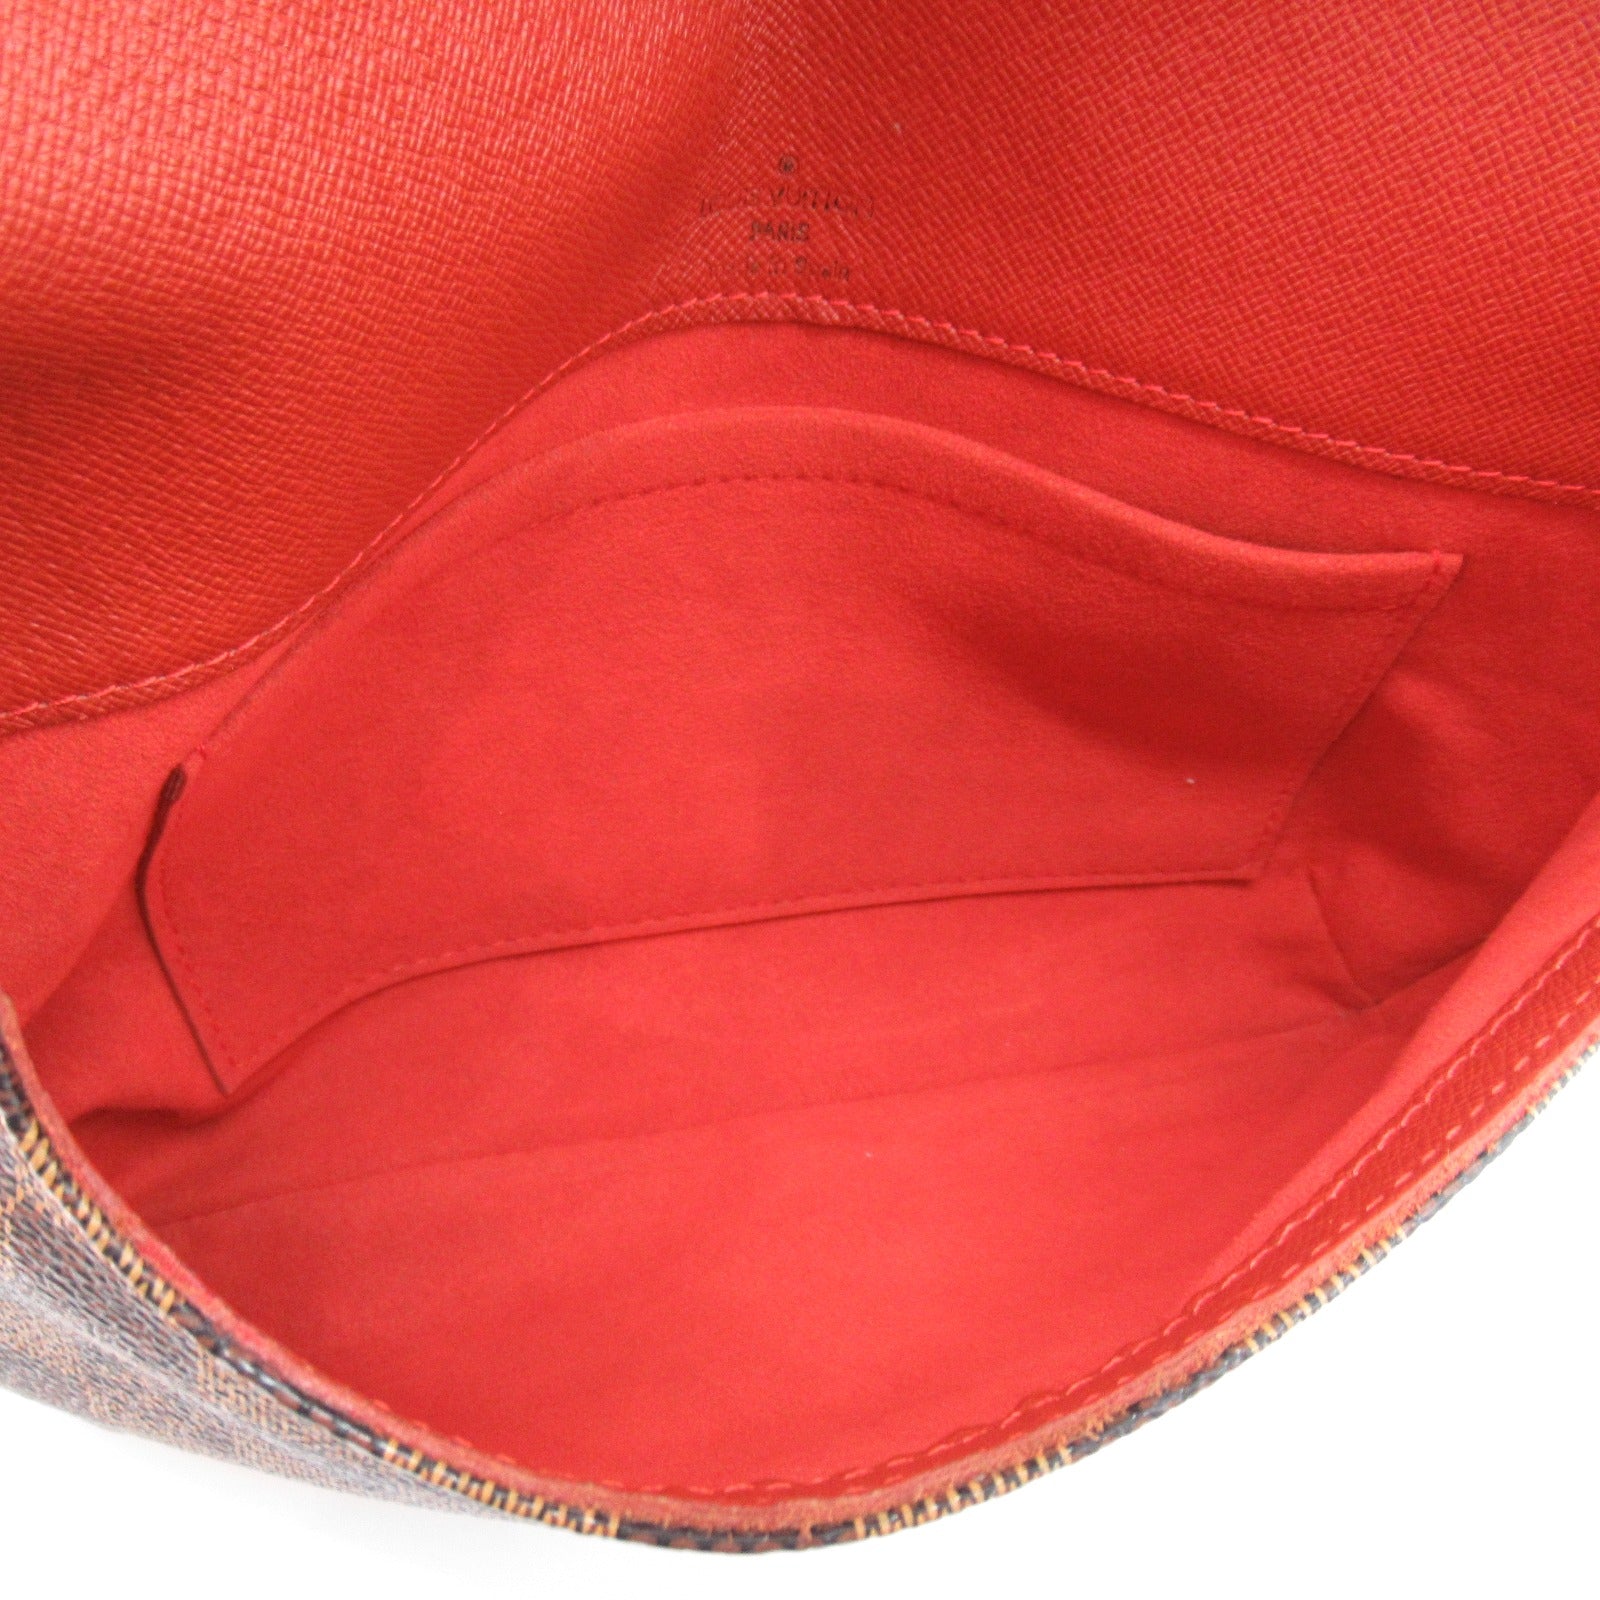 Louis Vuitton Louis Vuitton Musette Tango Long Shoulder Bag Shoulder Bag PVC Coated Canvas Damier  Brown N51301